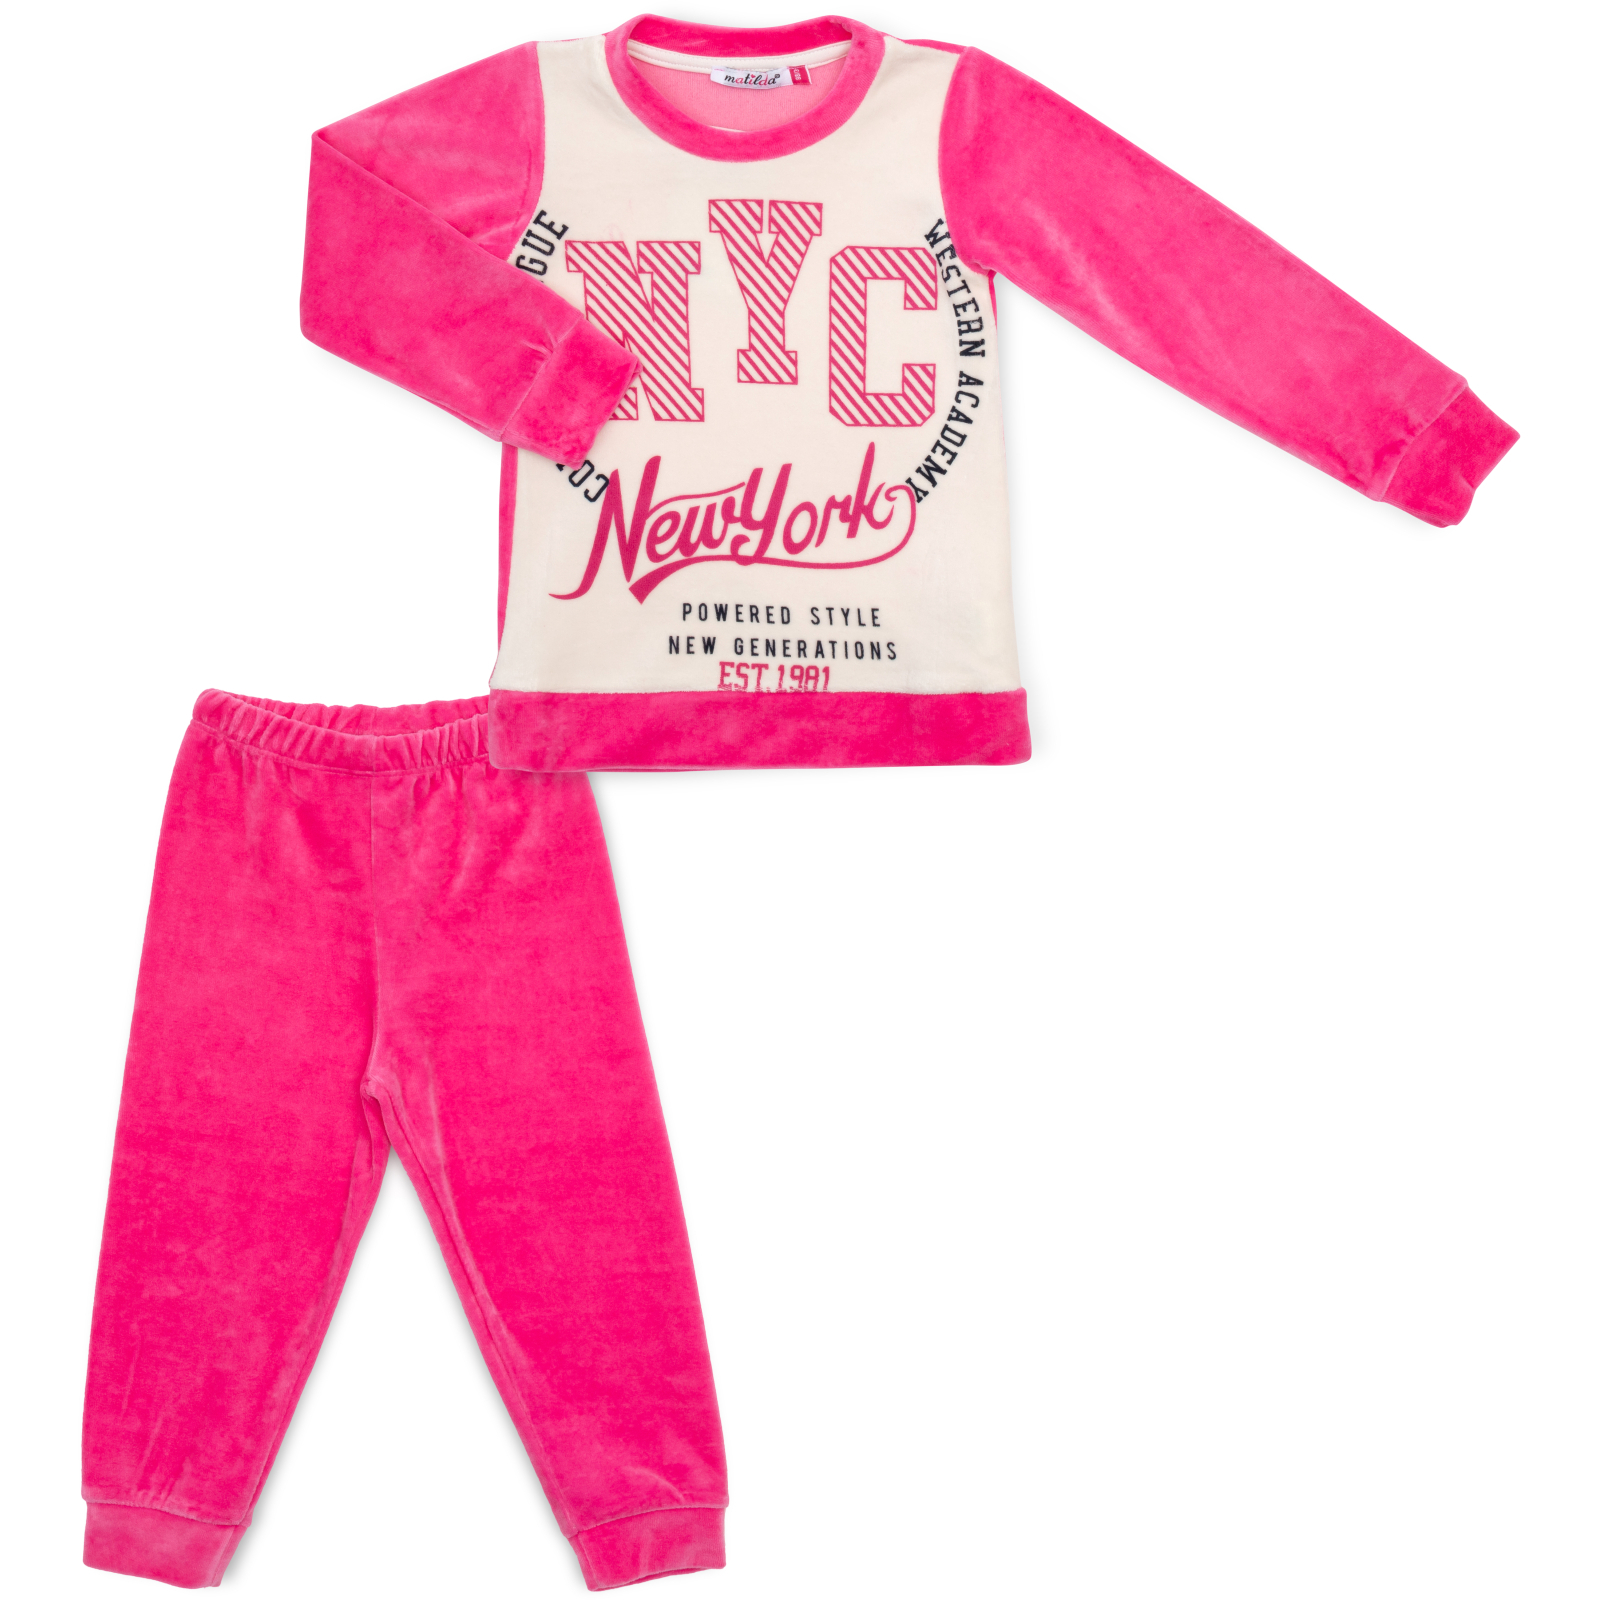 Пижама Matilda велюровая (7571-3-116G-pink)